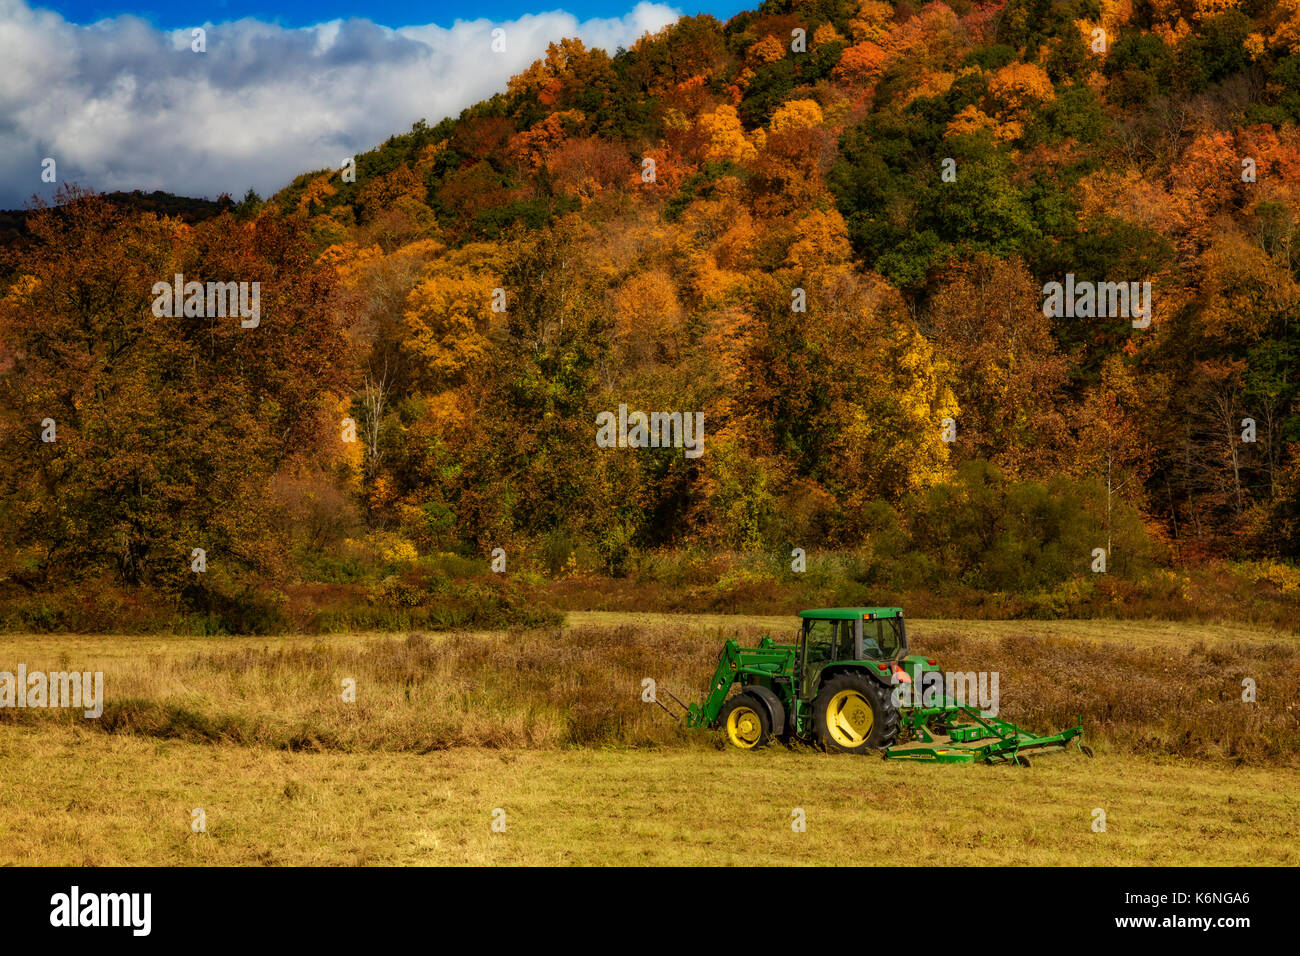 Tracteur John Deere - agriculteurs travaillent sur le terrain avec un tracteur John Deere 640 avec une HX10 accessoire Cutter rotatif à l'arrière de la balle et javelots dans l'avant du tracteur. Les montagnes en arrière-plan sont montrant les couleurs chaudes de l'automne. Banque D'Images